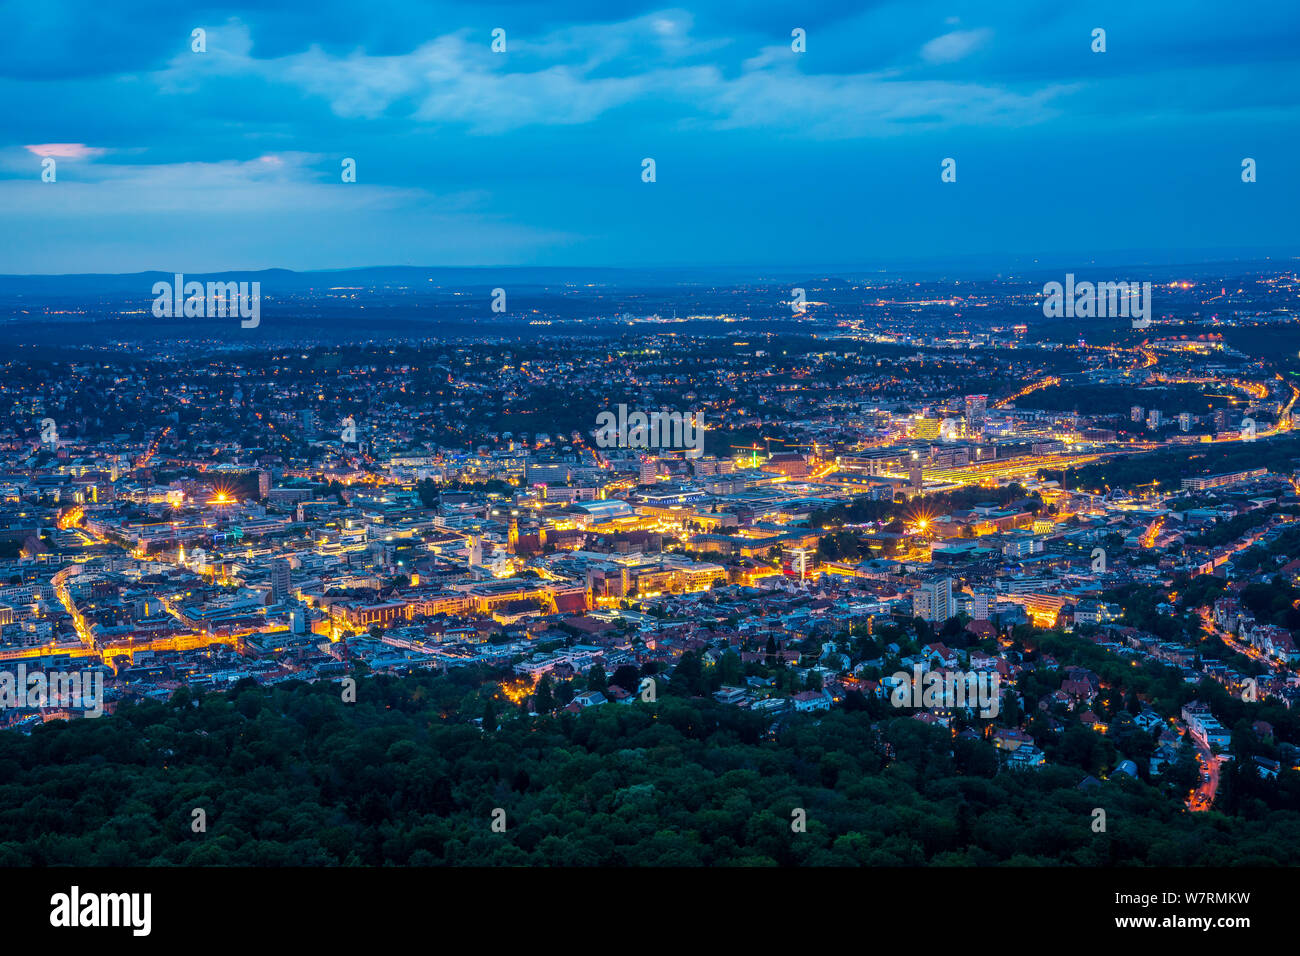 Alemania, ilumina la noche las luces del centro de la ciudad de Stuttgart desde arriba la perspectiva aérea en verano Foto de stock